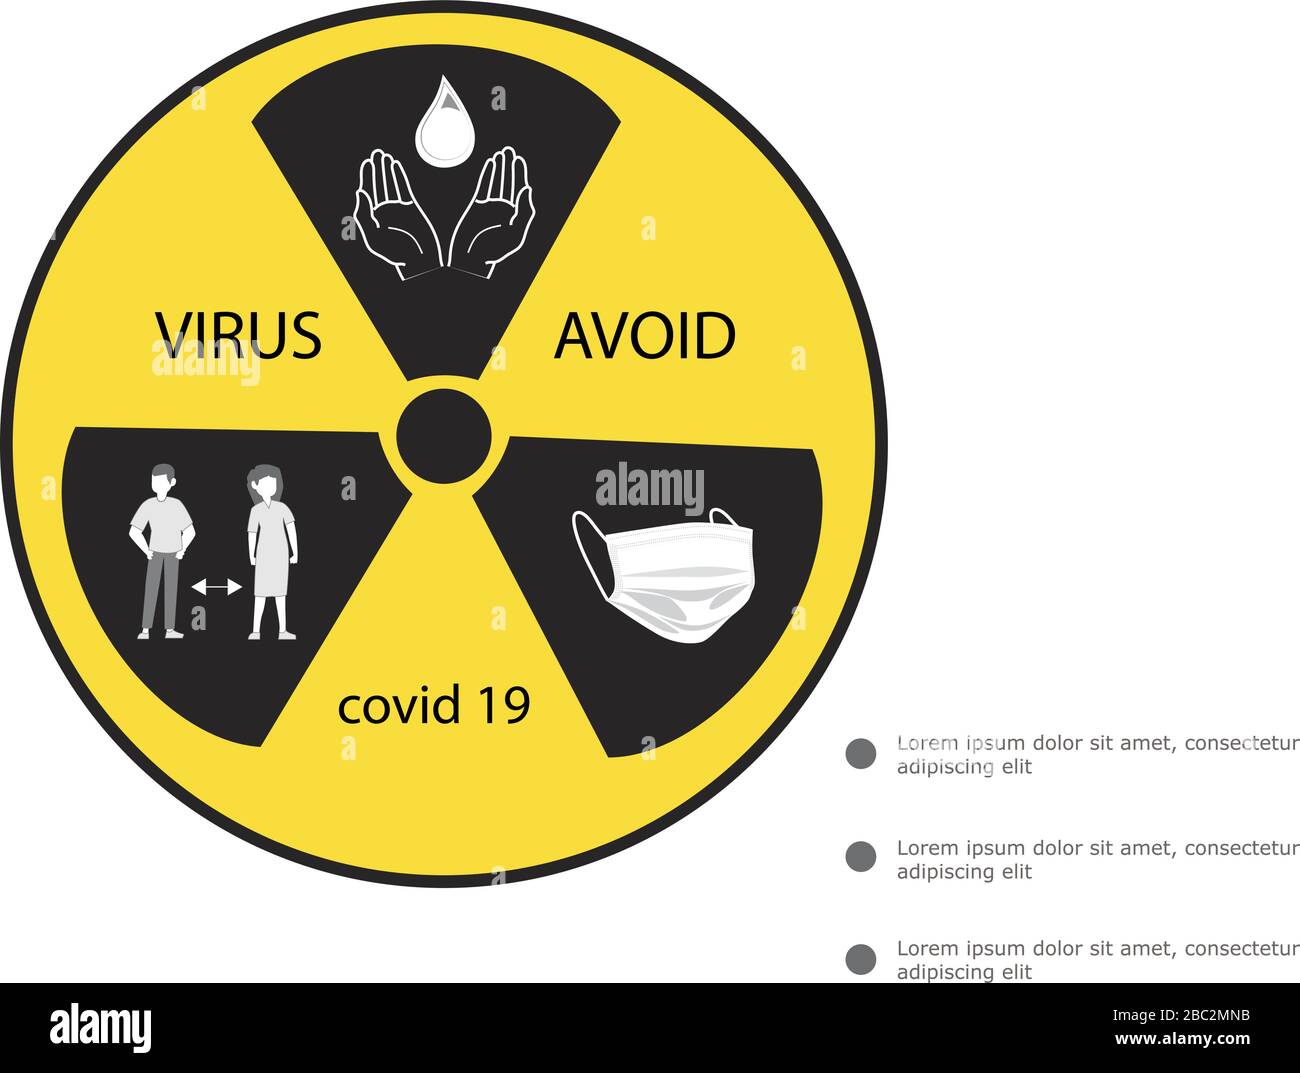 Icona di avvertenza e attenzione del coronavirus. Punto esclamativo, simbolo di pericolo per la salute, epidemia di COVID-19 o 2019-nCoV e simbolo pandemico. Temperatura semplice del logo piatto Illustrazione Vettoriale